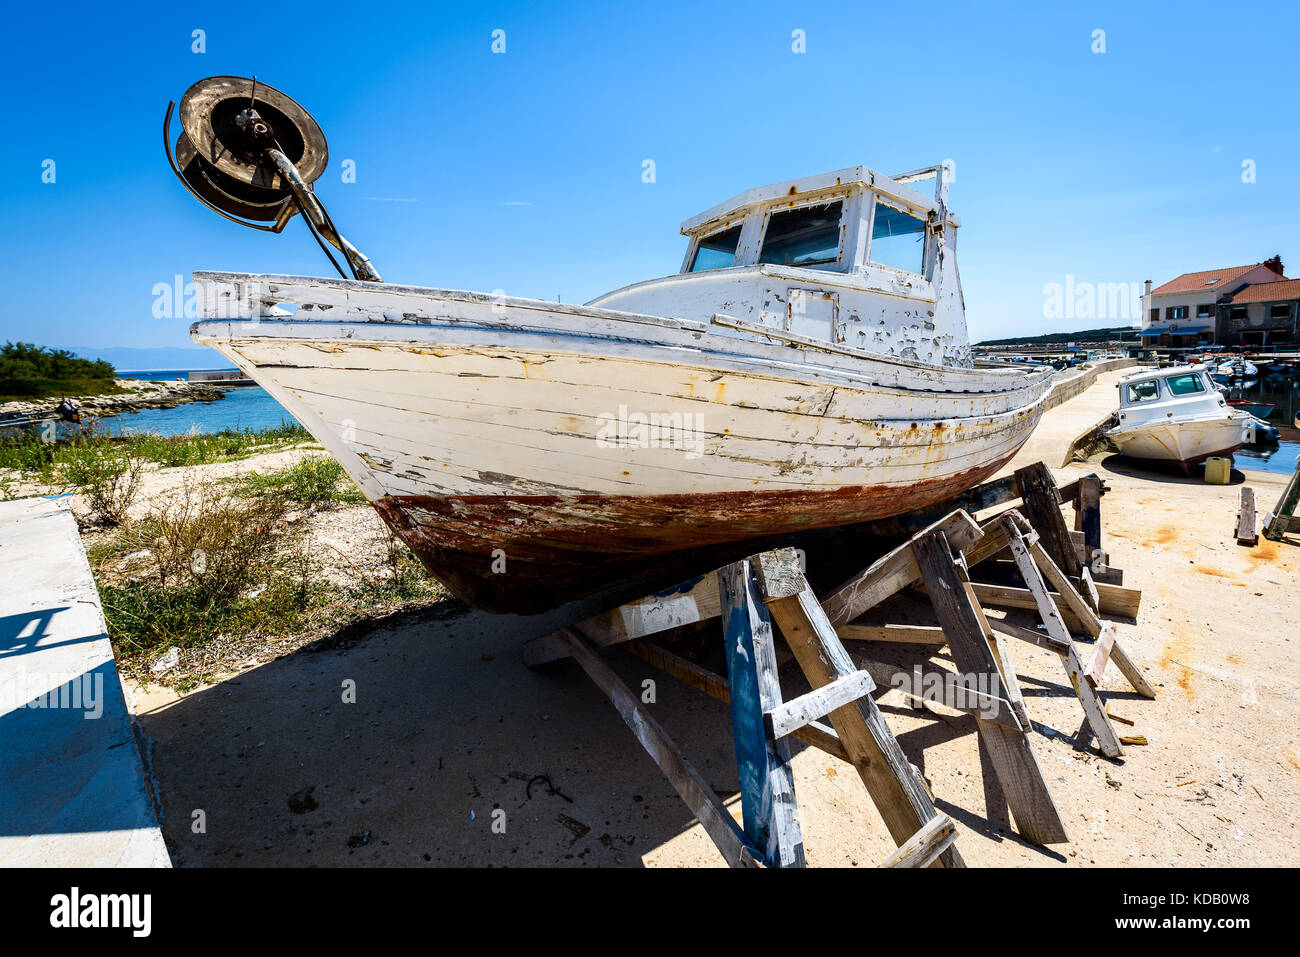 Reparatur und Restauration von alten hölzernen Angeln Schiff oder Boot. alte verwitterte Fischerboot montiert auf Holz- Buchsen für Dry Dock Renovierung und Reparatur mit Stockfoto